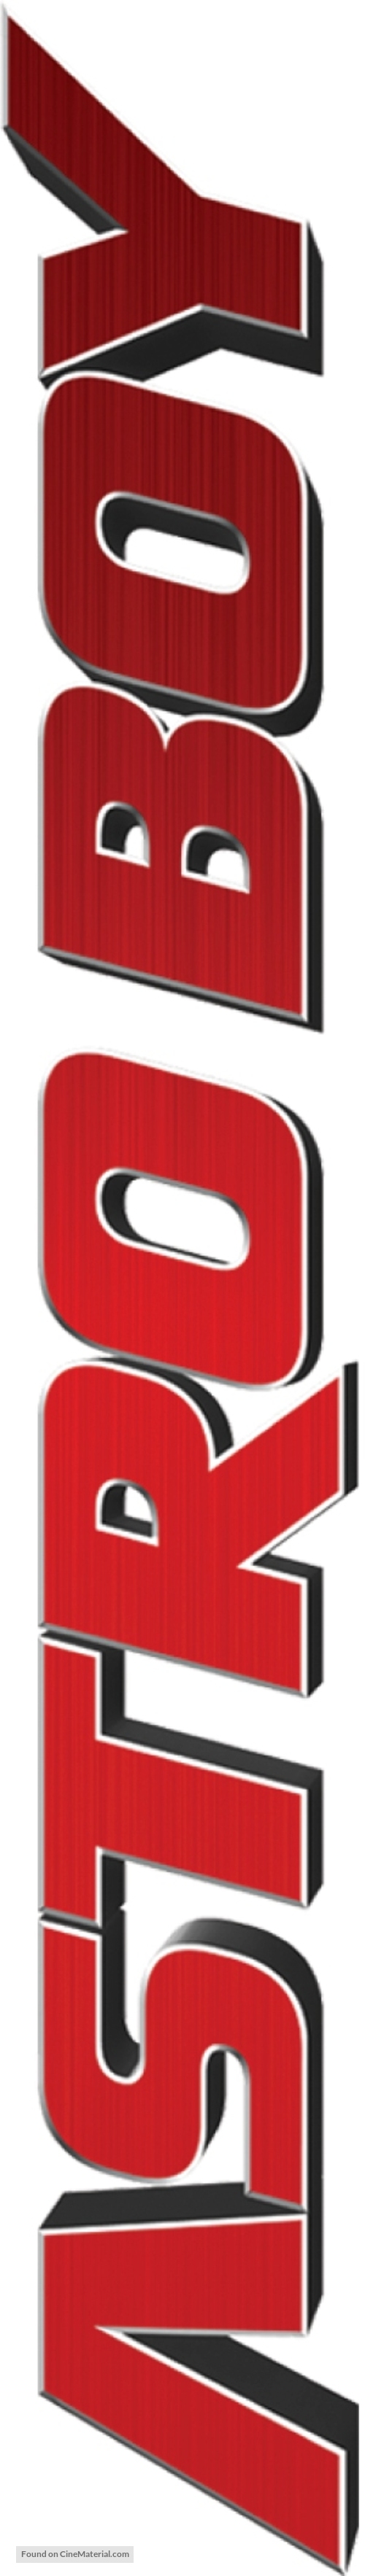 Astro Boy - Logo